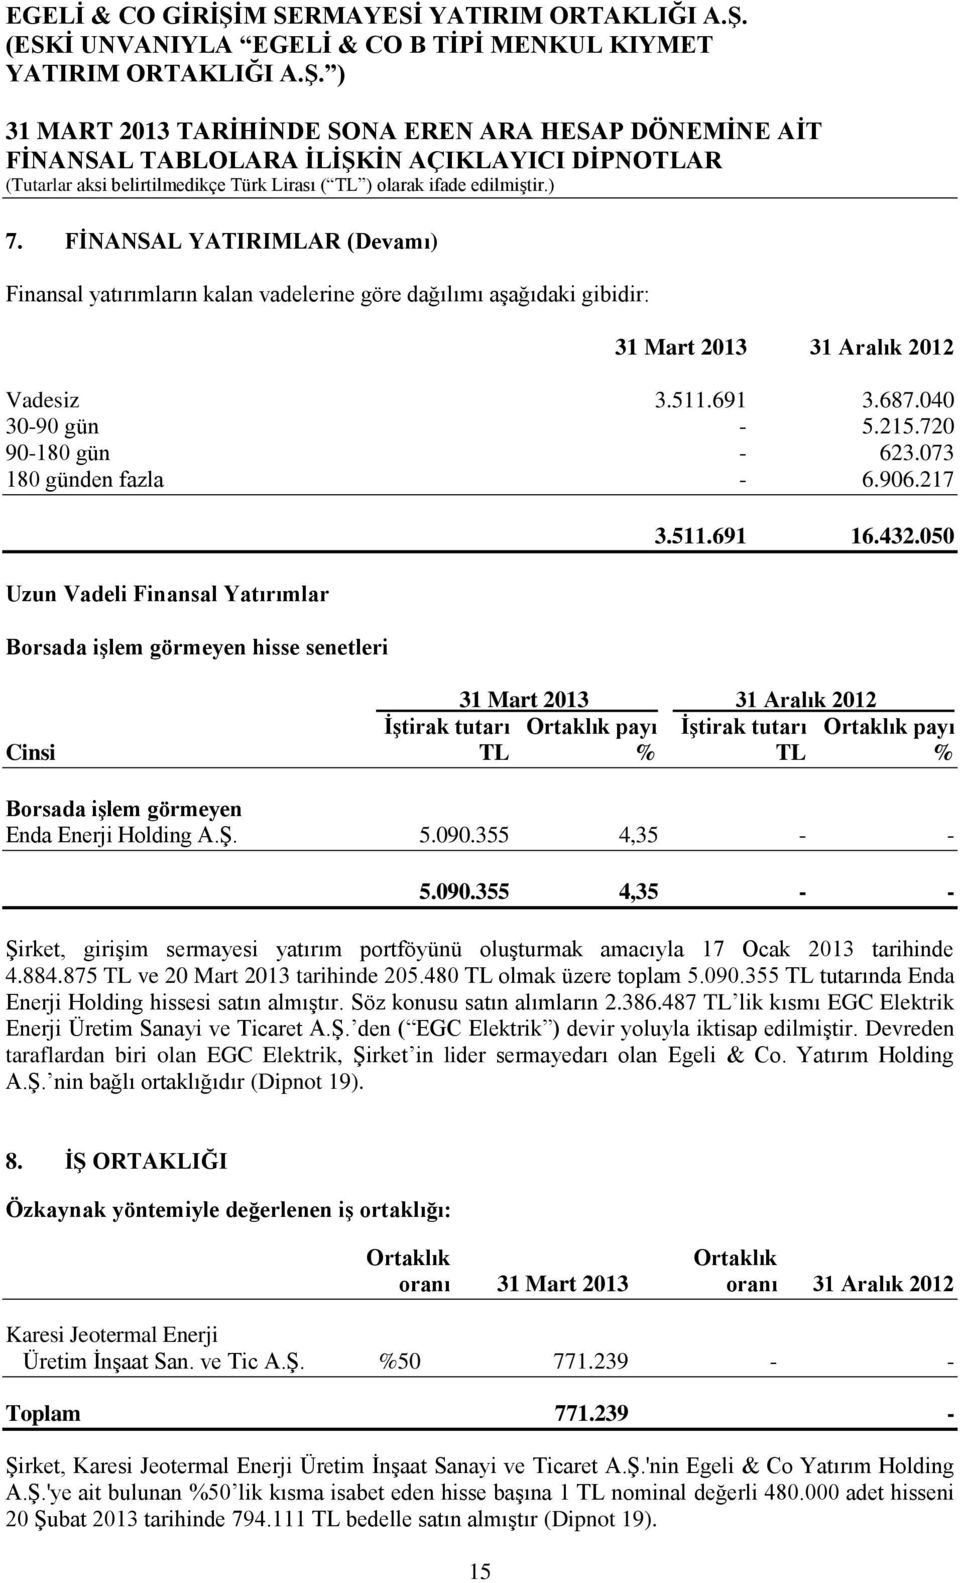 050 31 Mart 2013 31 Aralık 2012 İştirak tutarı Ortaklık payı İştirak tutarı Ortaklık payı Cinsi TL % TL % Borsada işlem görmeyen Enda Enerji Holding A.Ş. 5.090.